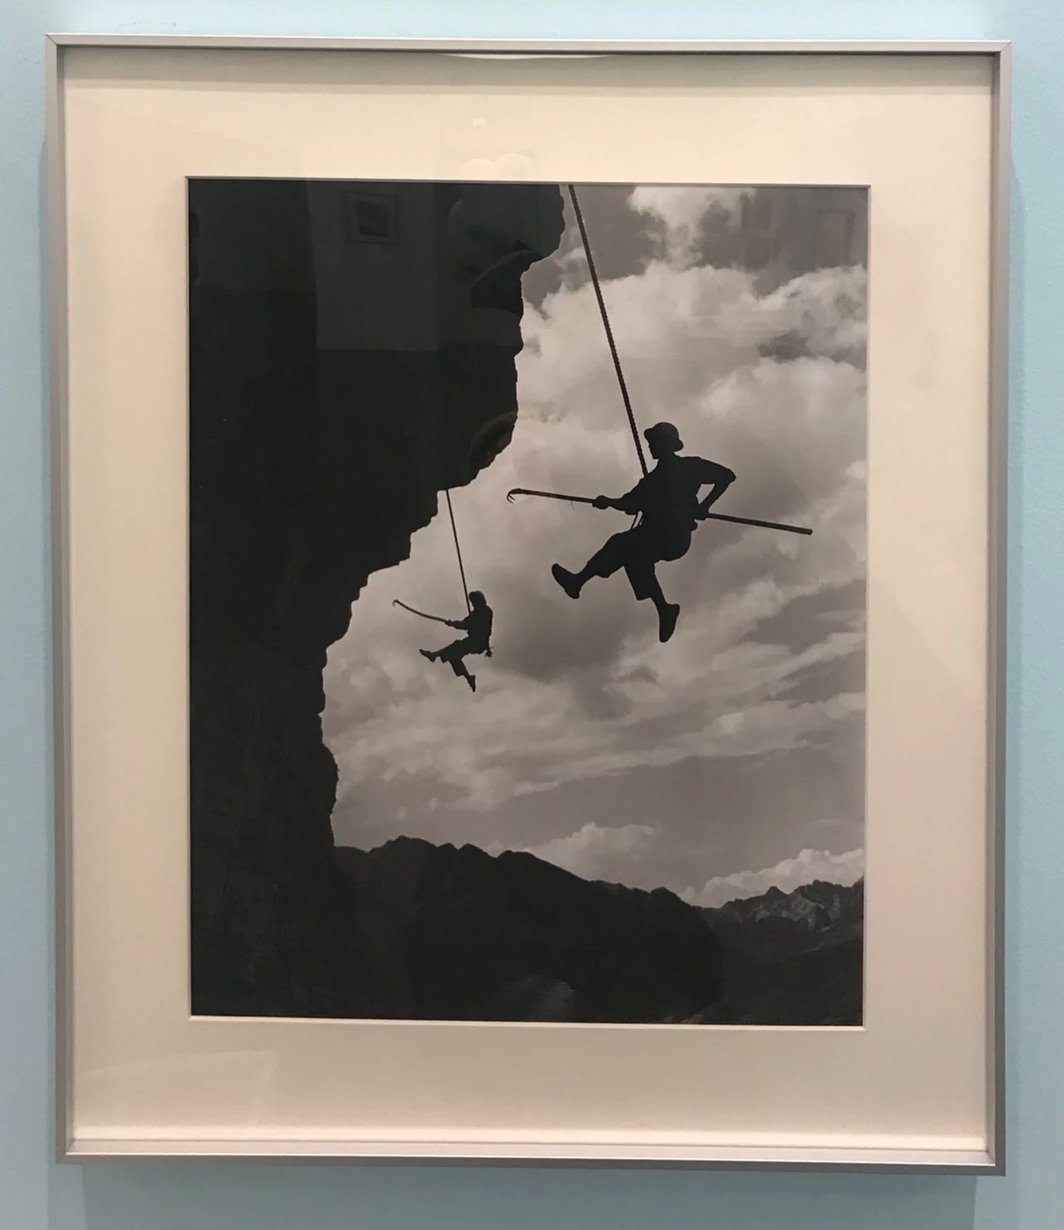 魏德忠，《凌空除险》，1960-69，摄影，30.4 x 40.6 cm.